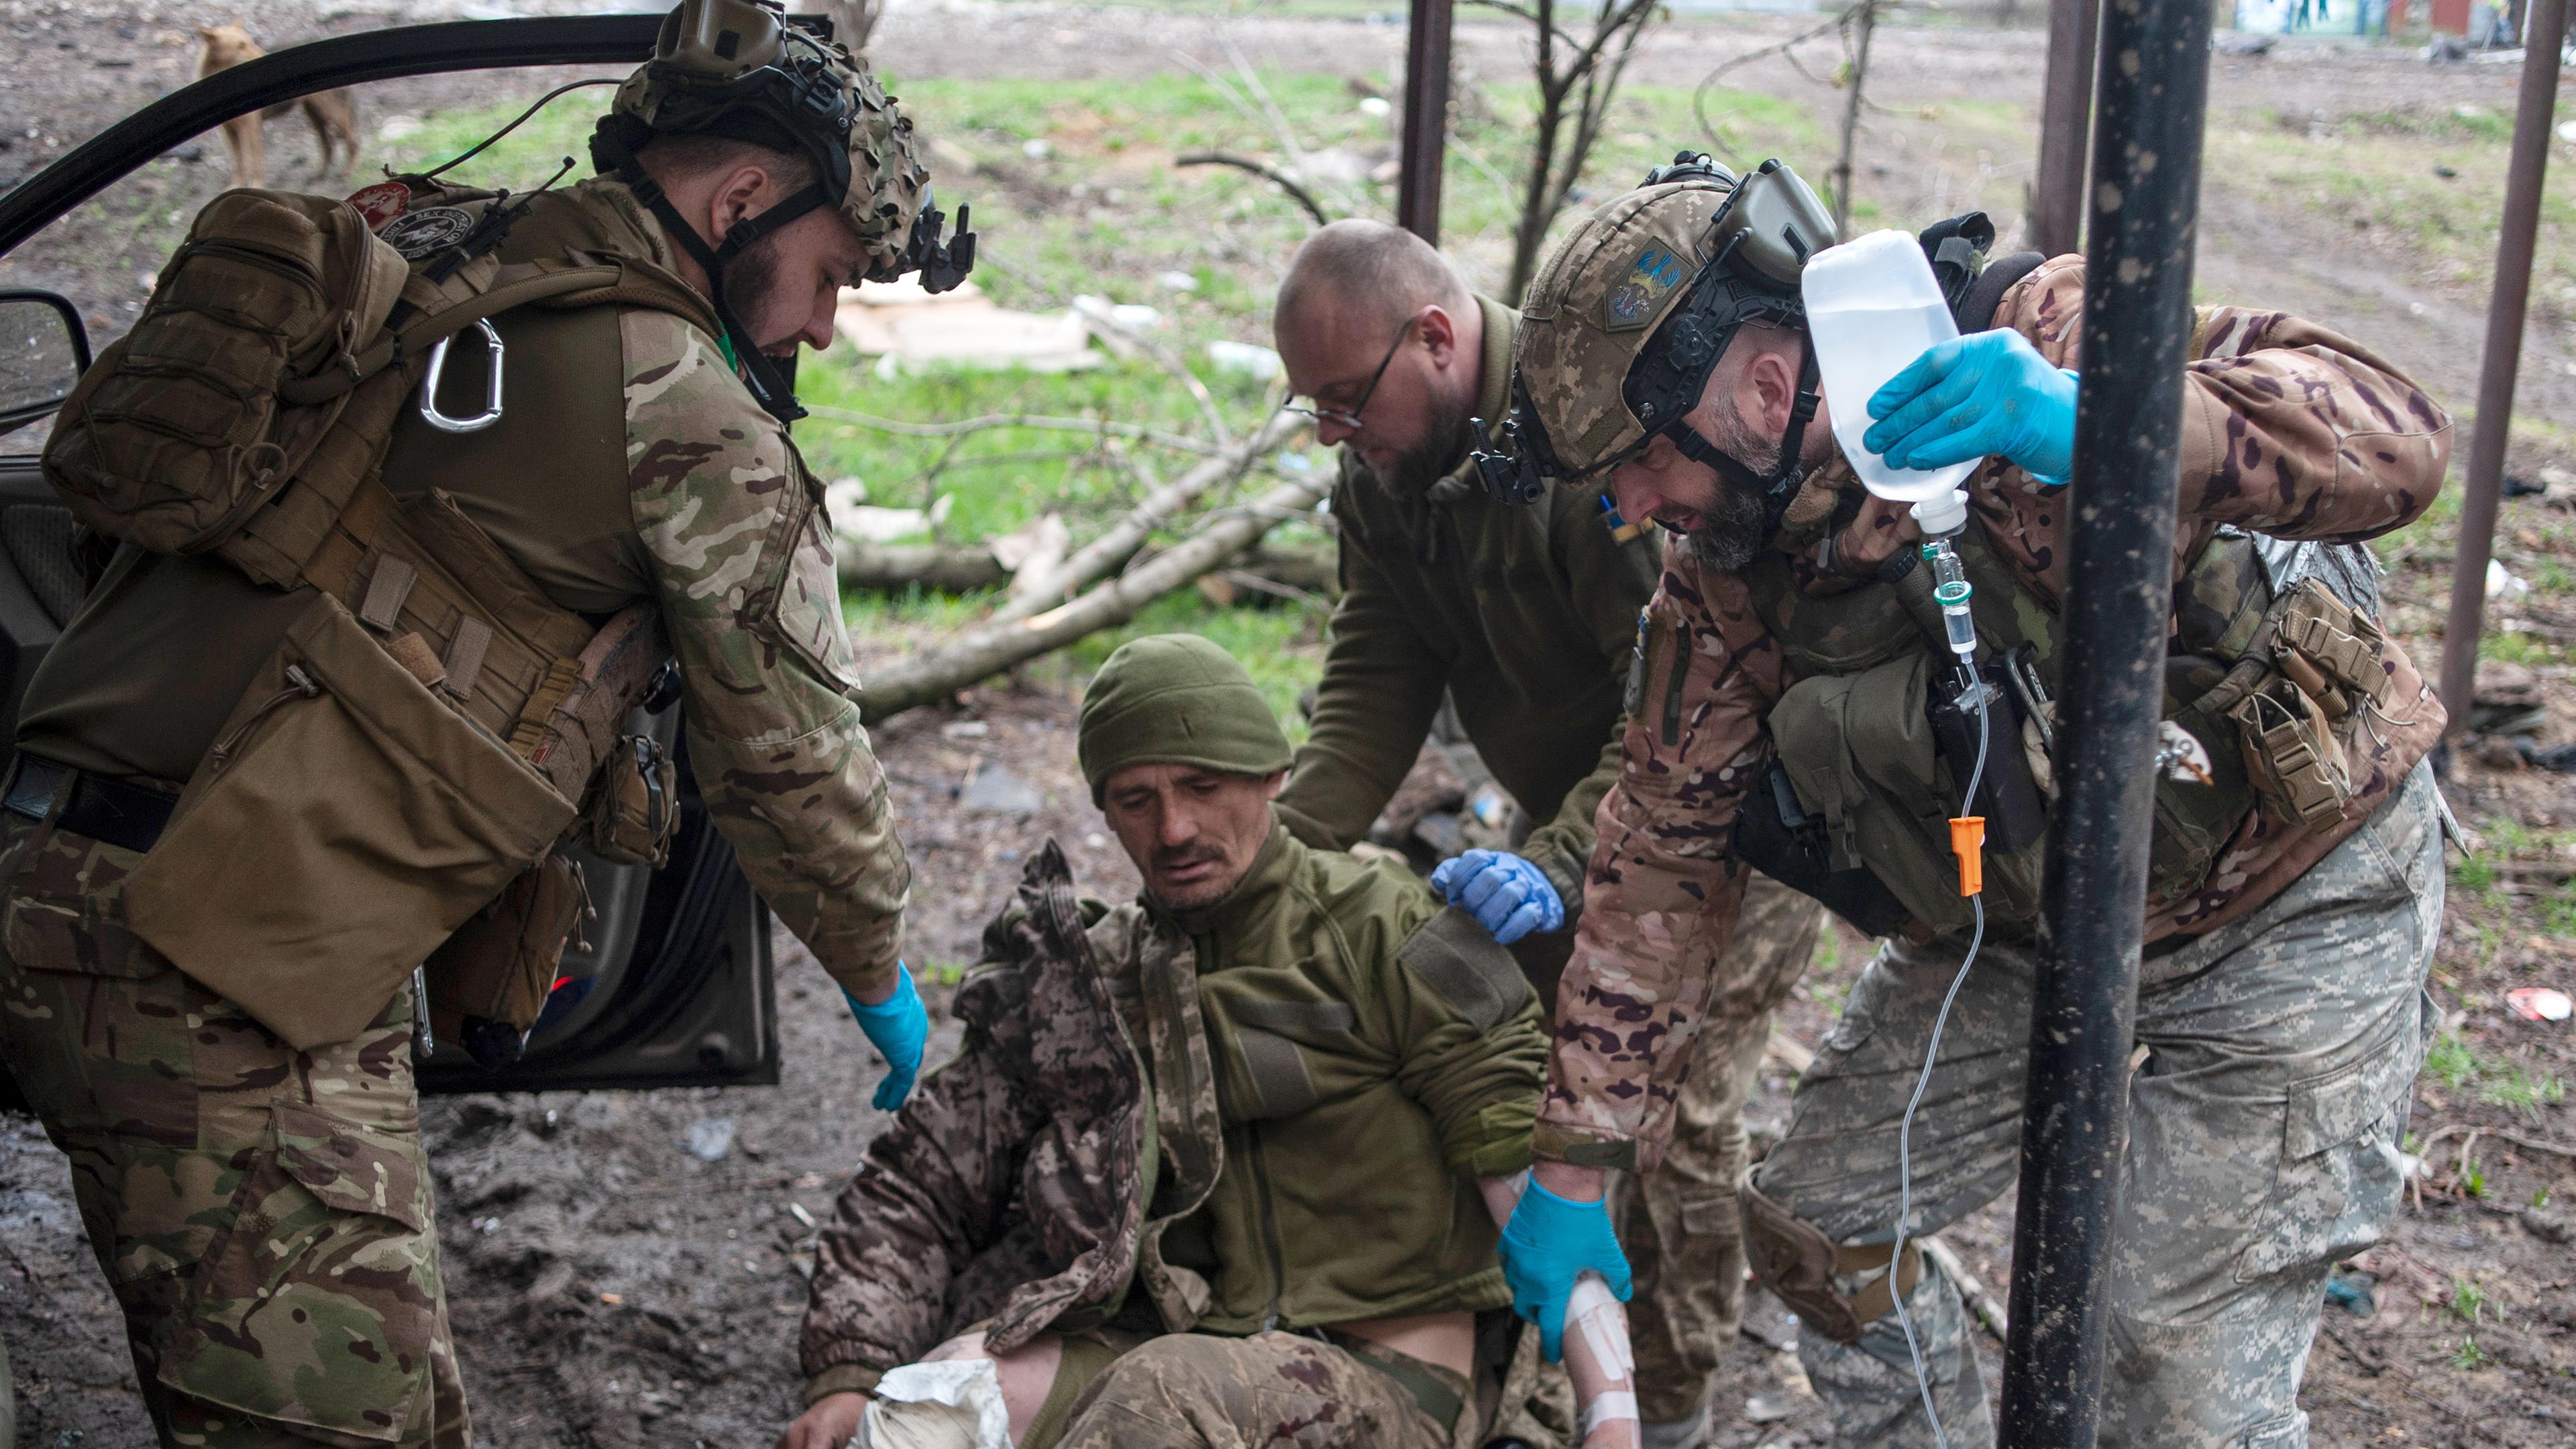 Ukrainische Soldaten leisten einem verwundeten Soldaten erste Hilfe in Bachmut in der Region Donezk, aufgenommen am 12.04.2023